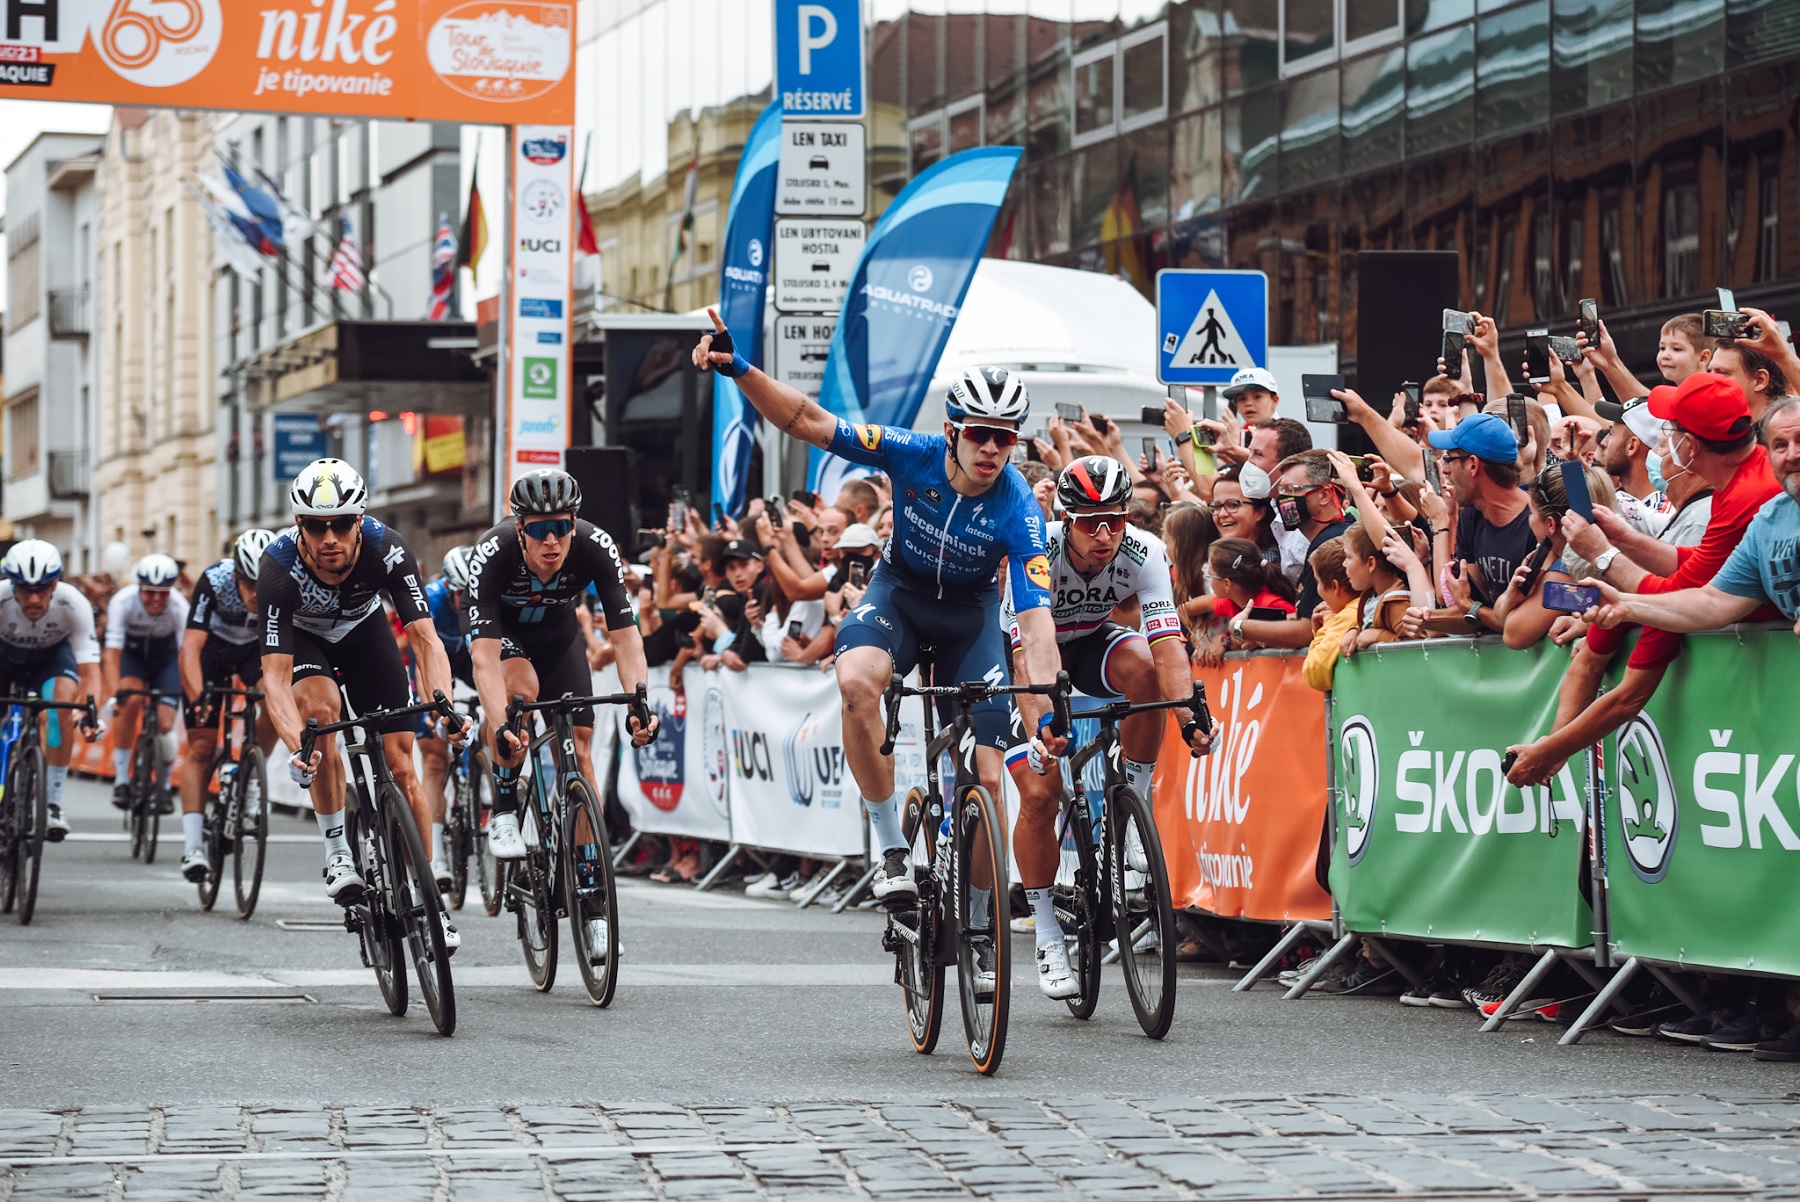 Orgullo cordobés, Álvaro Hodeg ganó la primera etapa del Tour de Eslovaquia